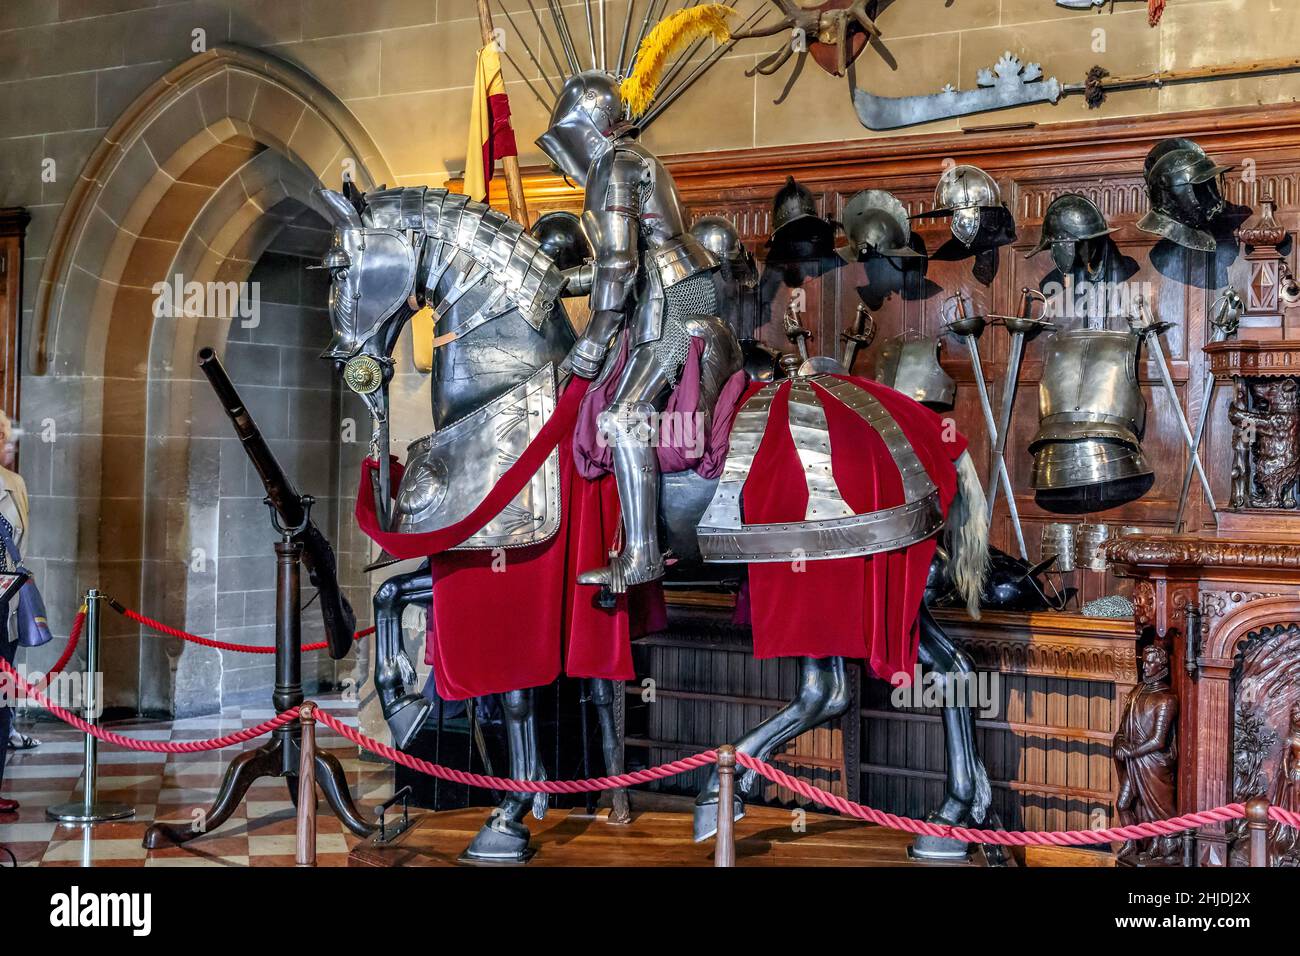 WARWICK, GRAN BRETAGNA - 15 SETTEMBRE 2014: Queste sono la disposizione del cavaliere equestre, armi e armature in mostra nella Sala Grande del Castello di Warwick. Foto Stock